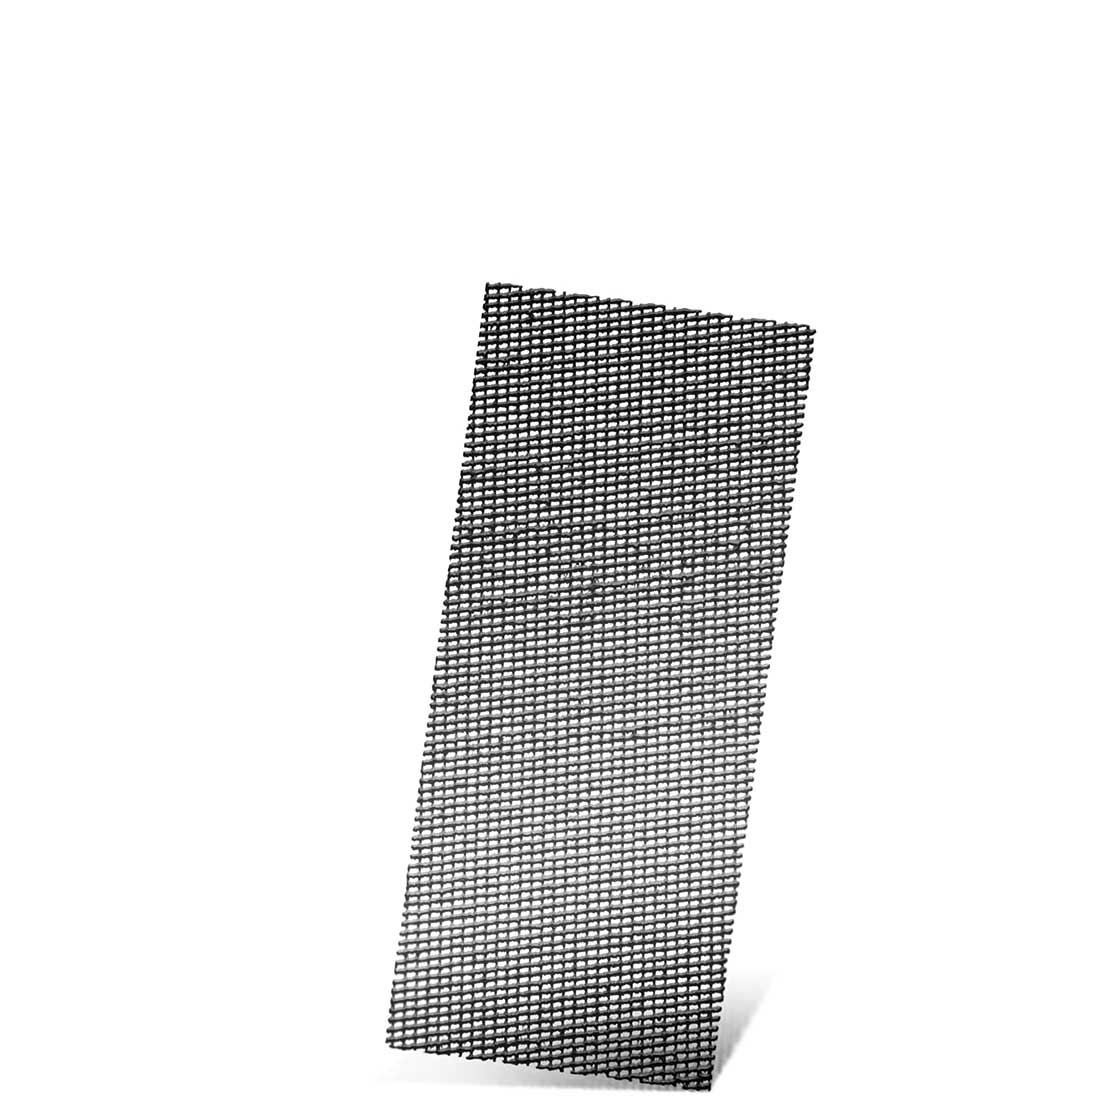 MENZER Schleifgitter für Handschleifer, K60–180, 280 x 115 mm / Gitter / Siliciumcarbid